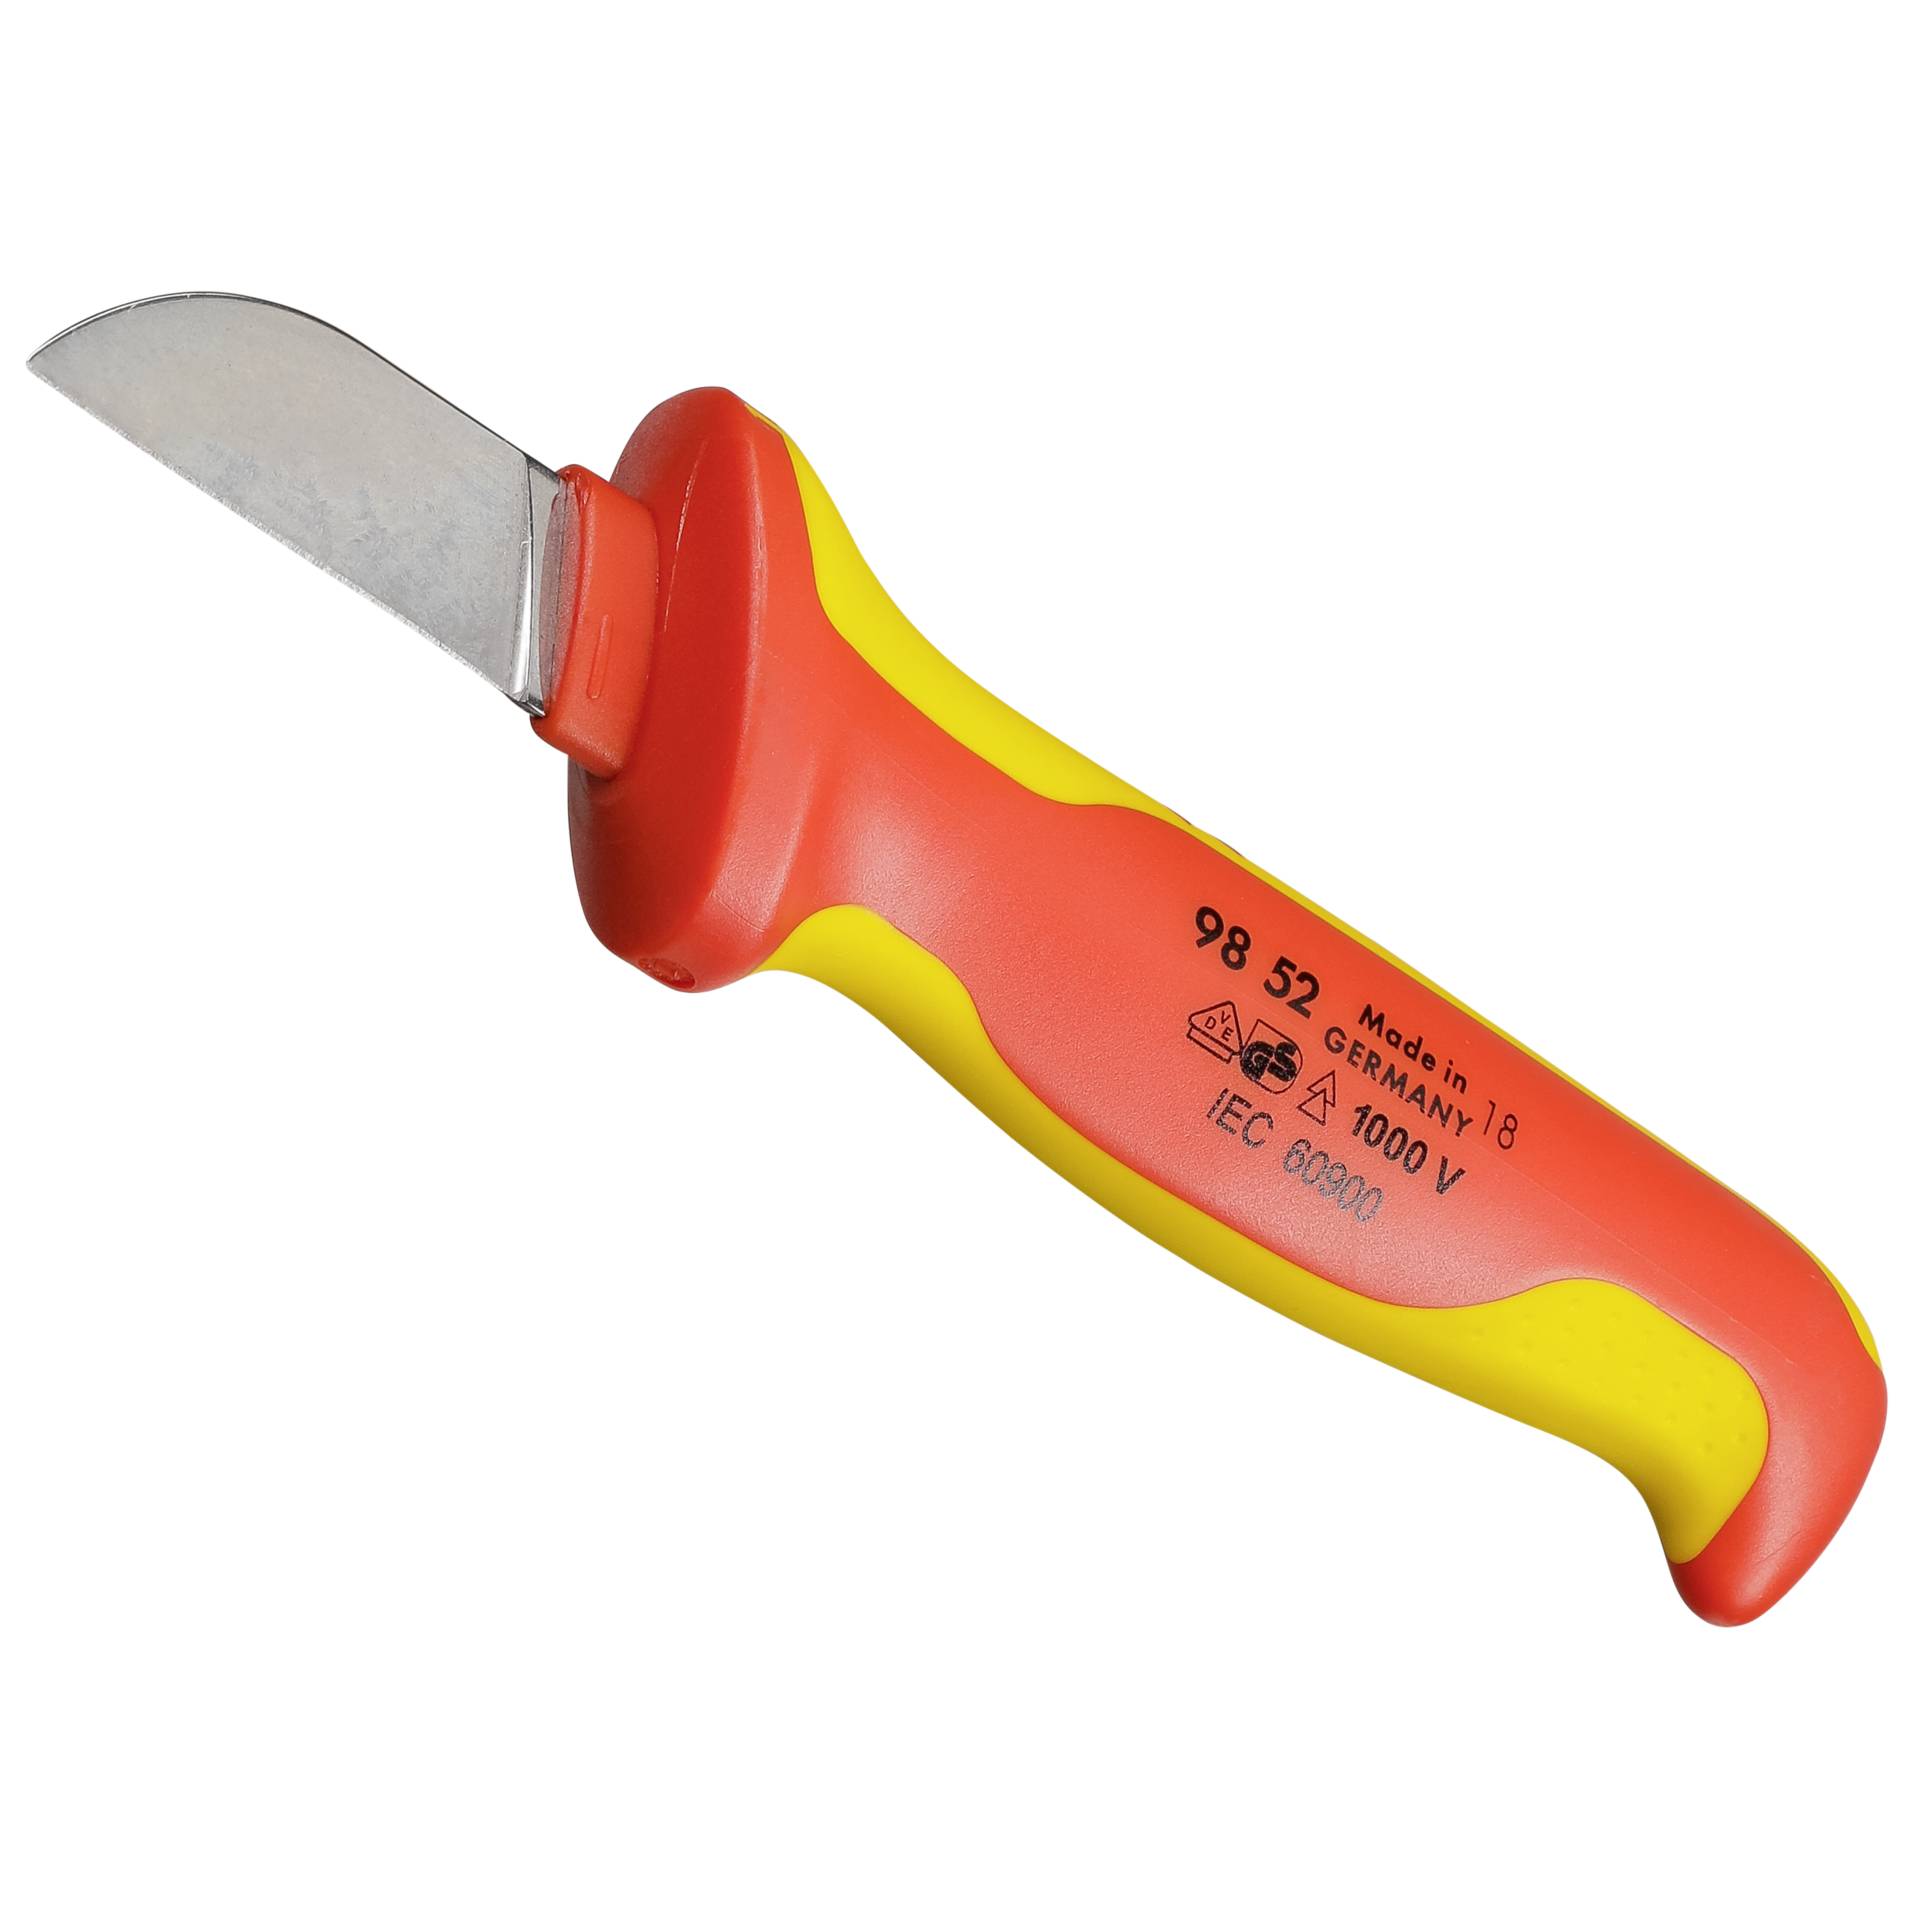 Knipex 98 52 Teppichmesser Orange, Rot Feststehendes Messer